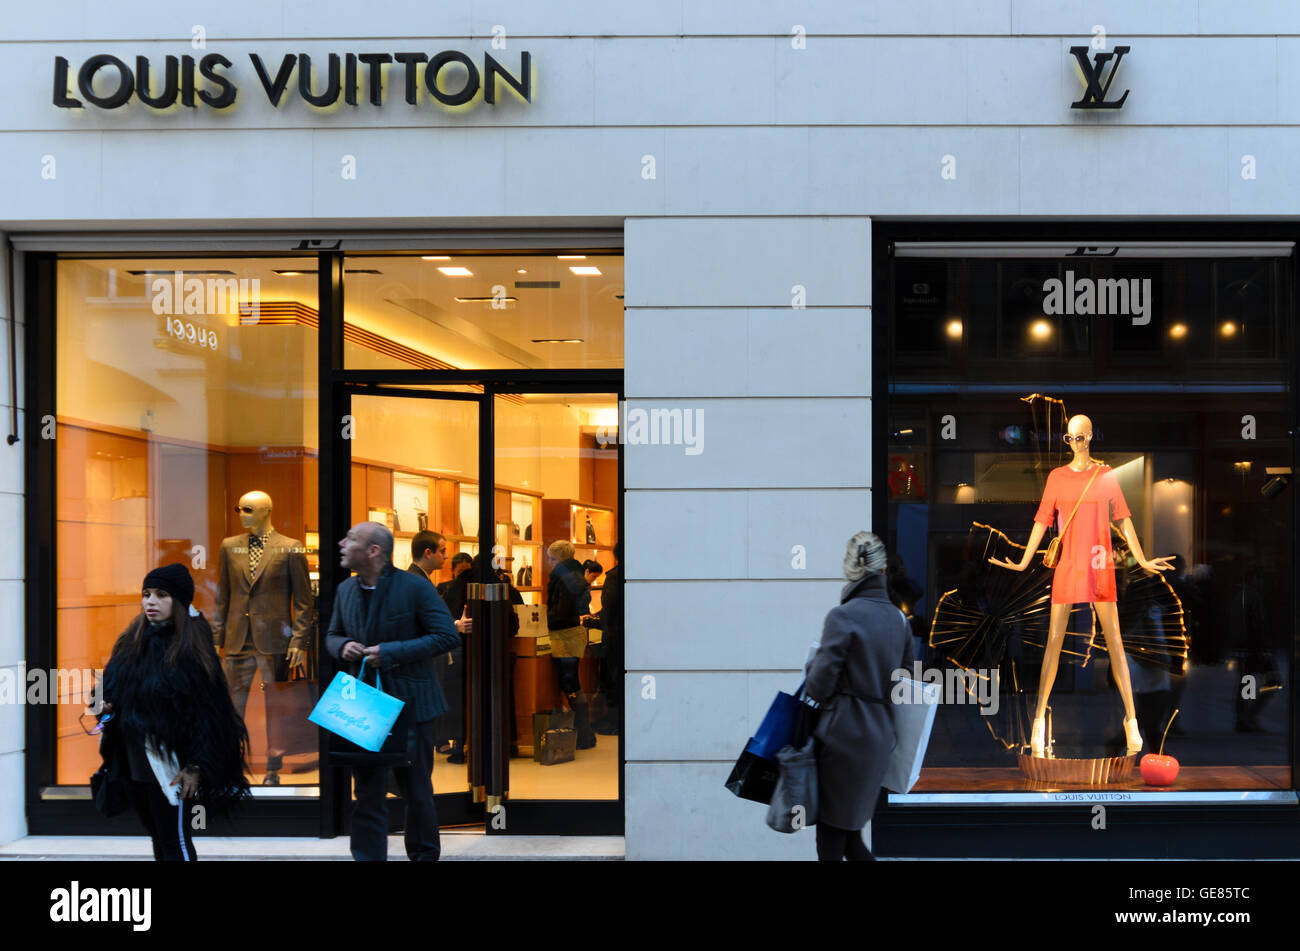 Wien, Wien: Store von Louis Vuitton am Kohlmarkt, Österreich, Wien, 01  Stockfotografie - Alamy